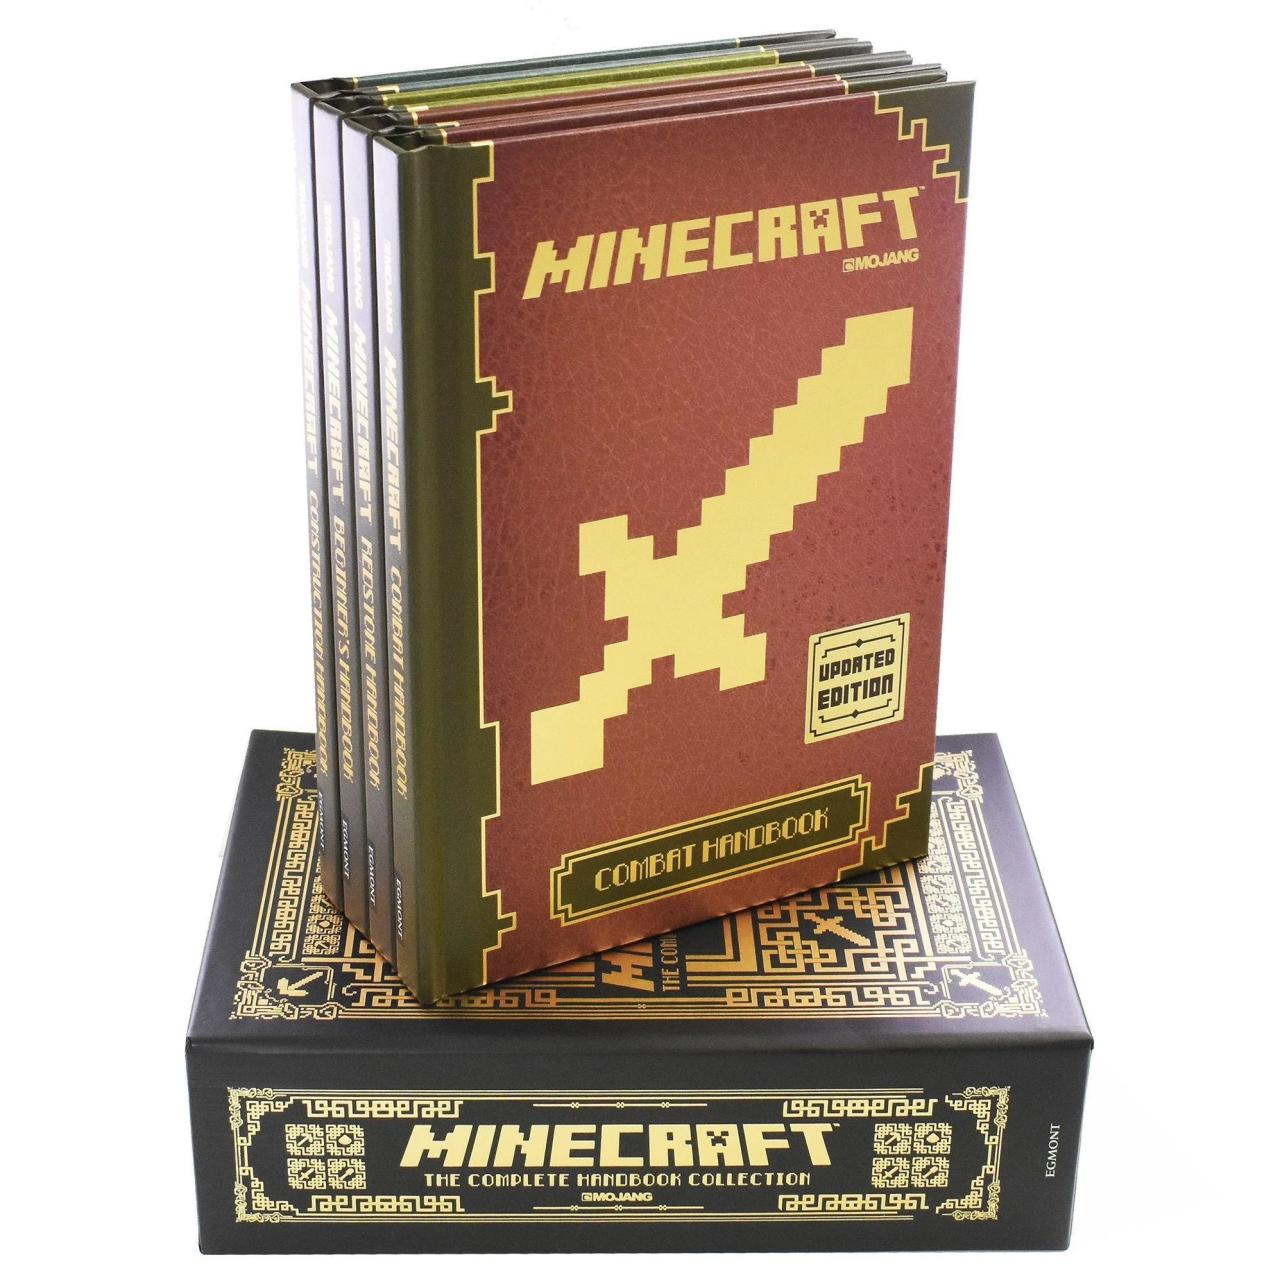 Minecraft books in order